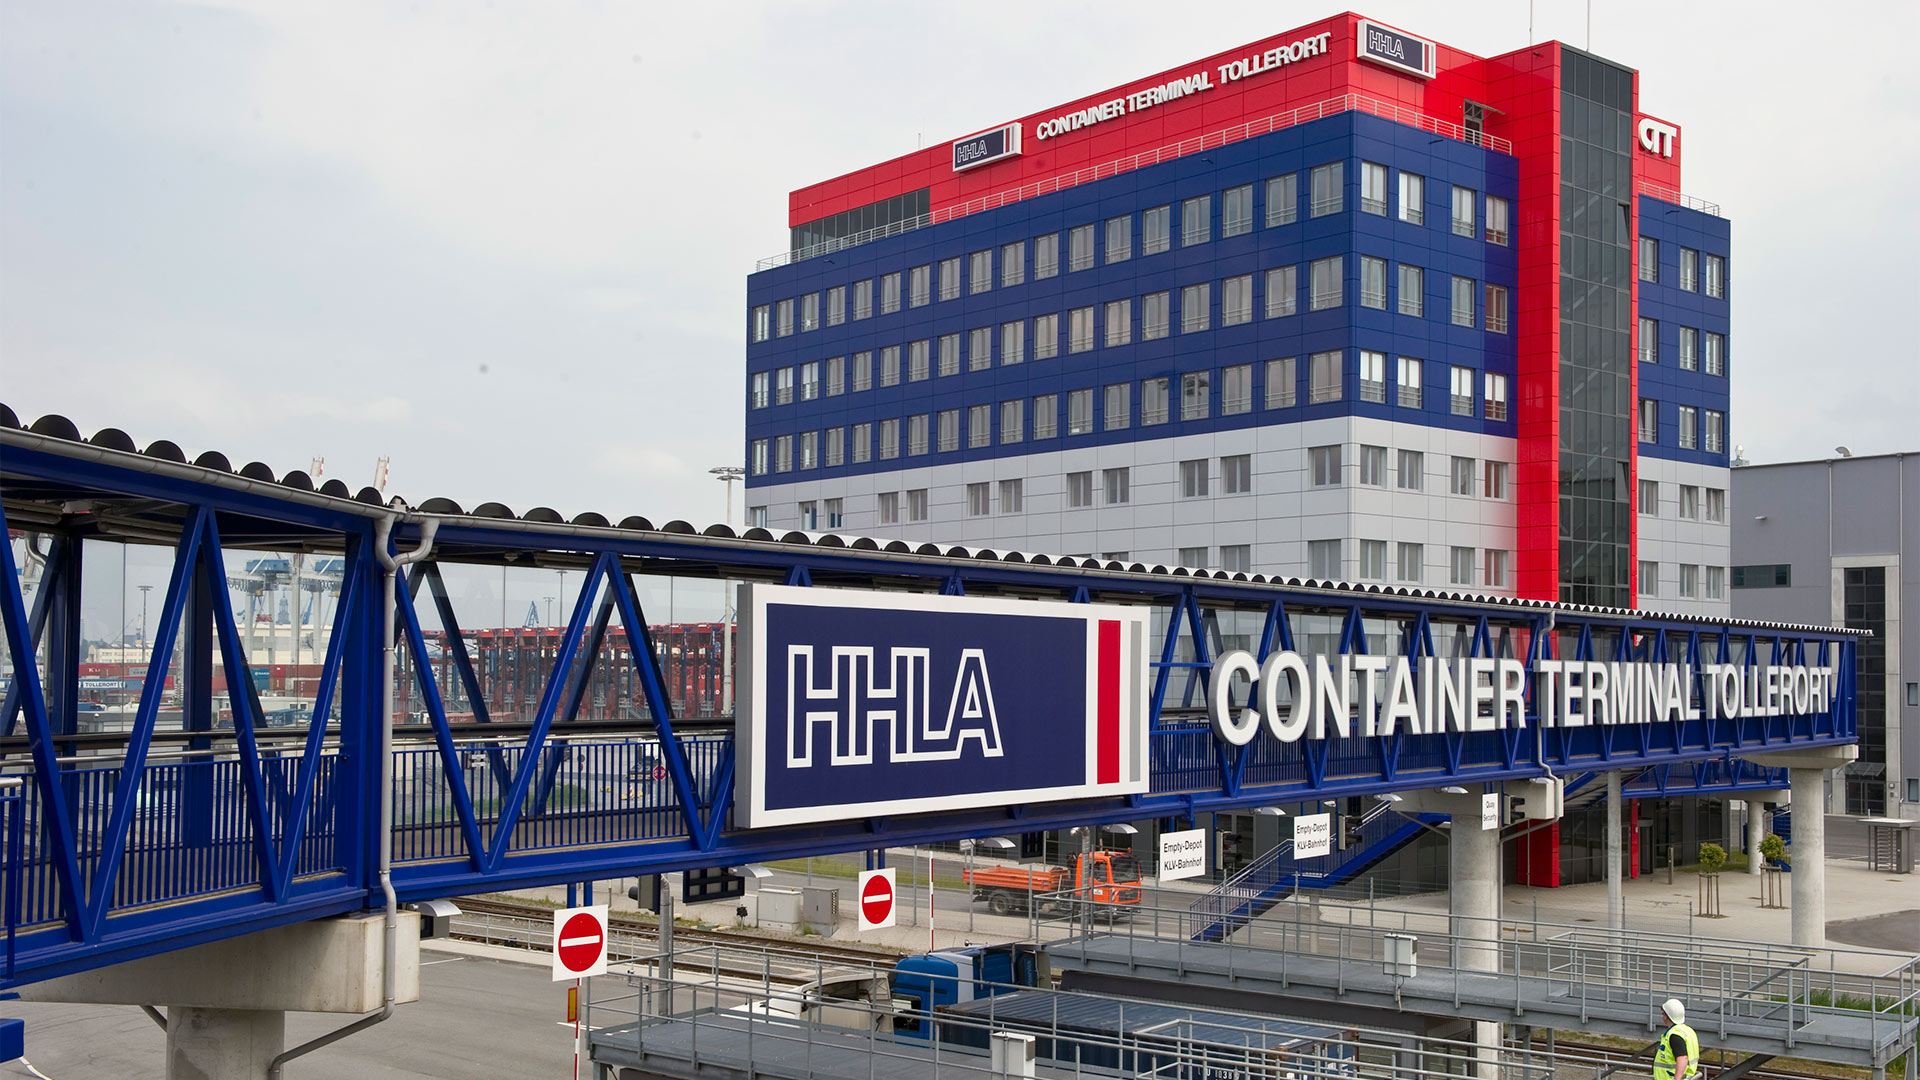 Container Terminal Tollerort (CTT) der Hamburg Hafen und Logistik AG (HHLA).